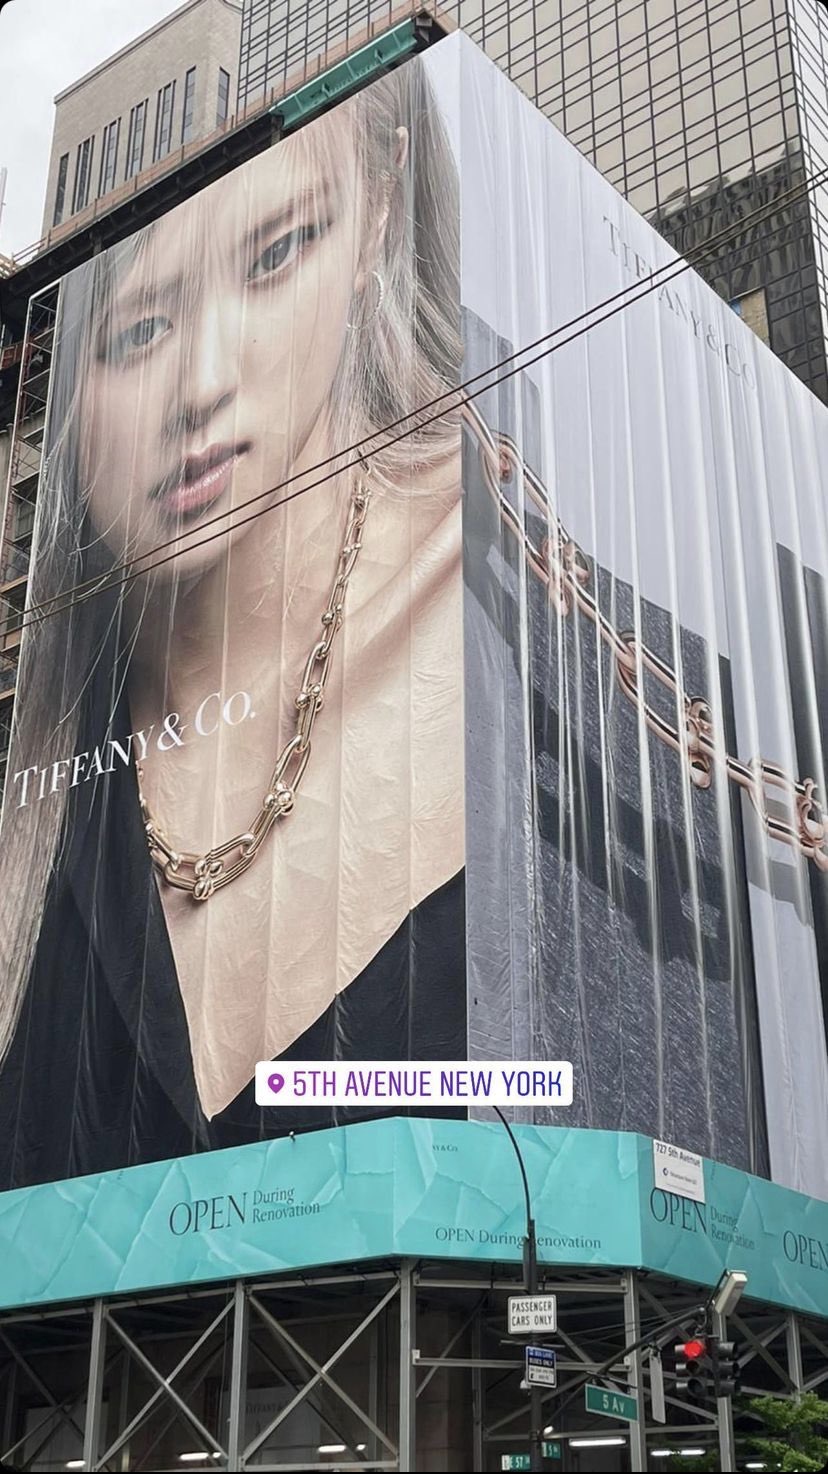 Rosé BLACKPINK xuất hiện tấm billboard bên ngoài cửa hàng của Tiffany & Co tại đại lộ số 5 - khu mua sắm nhất tại New York, Mỹ.